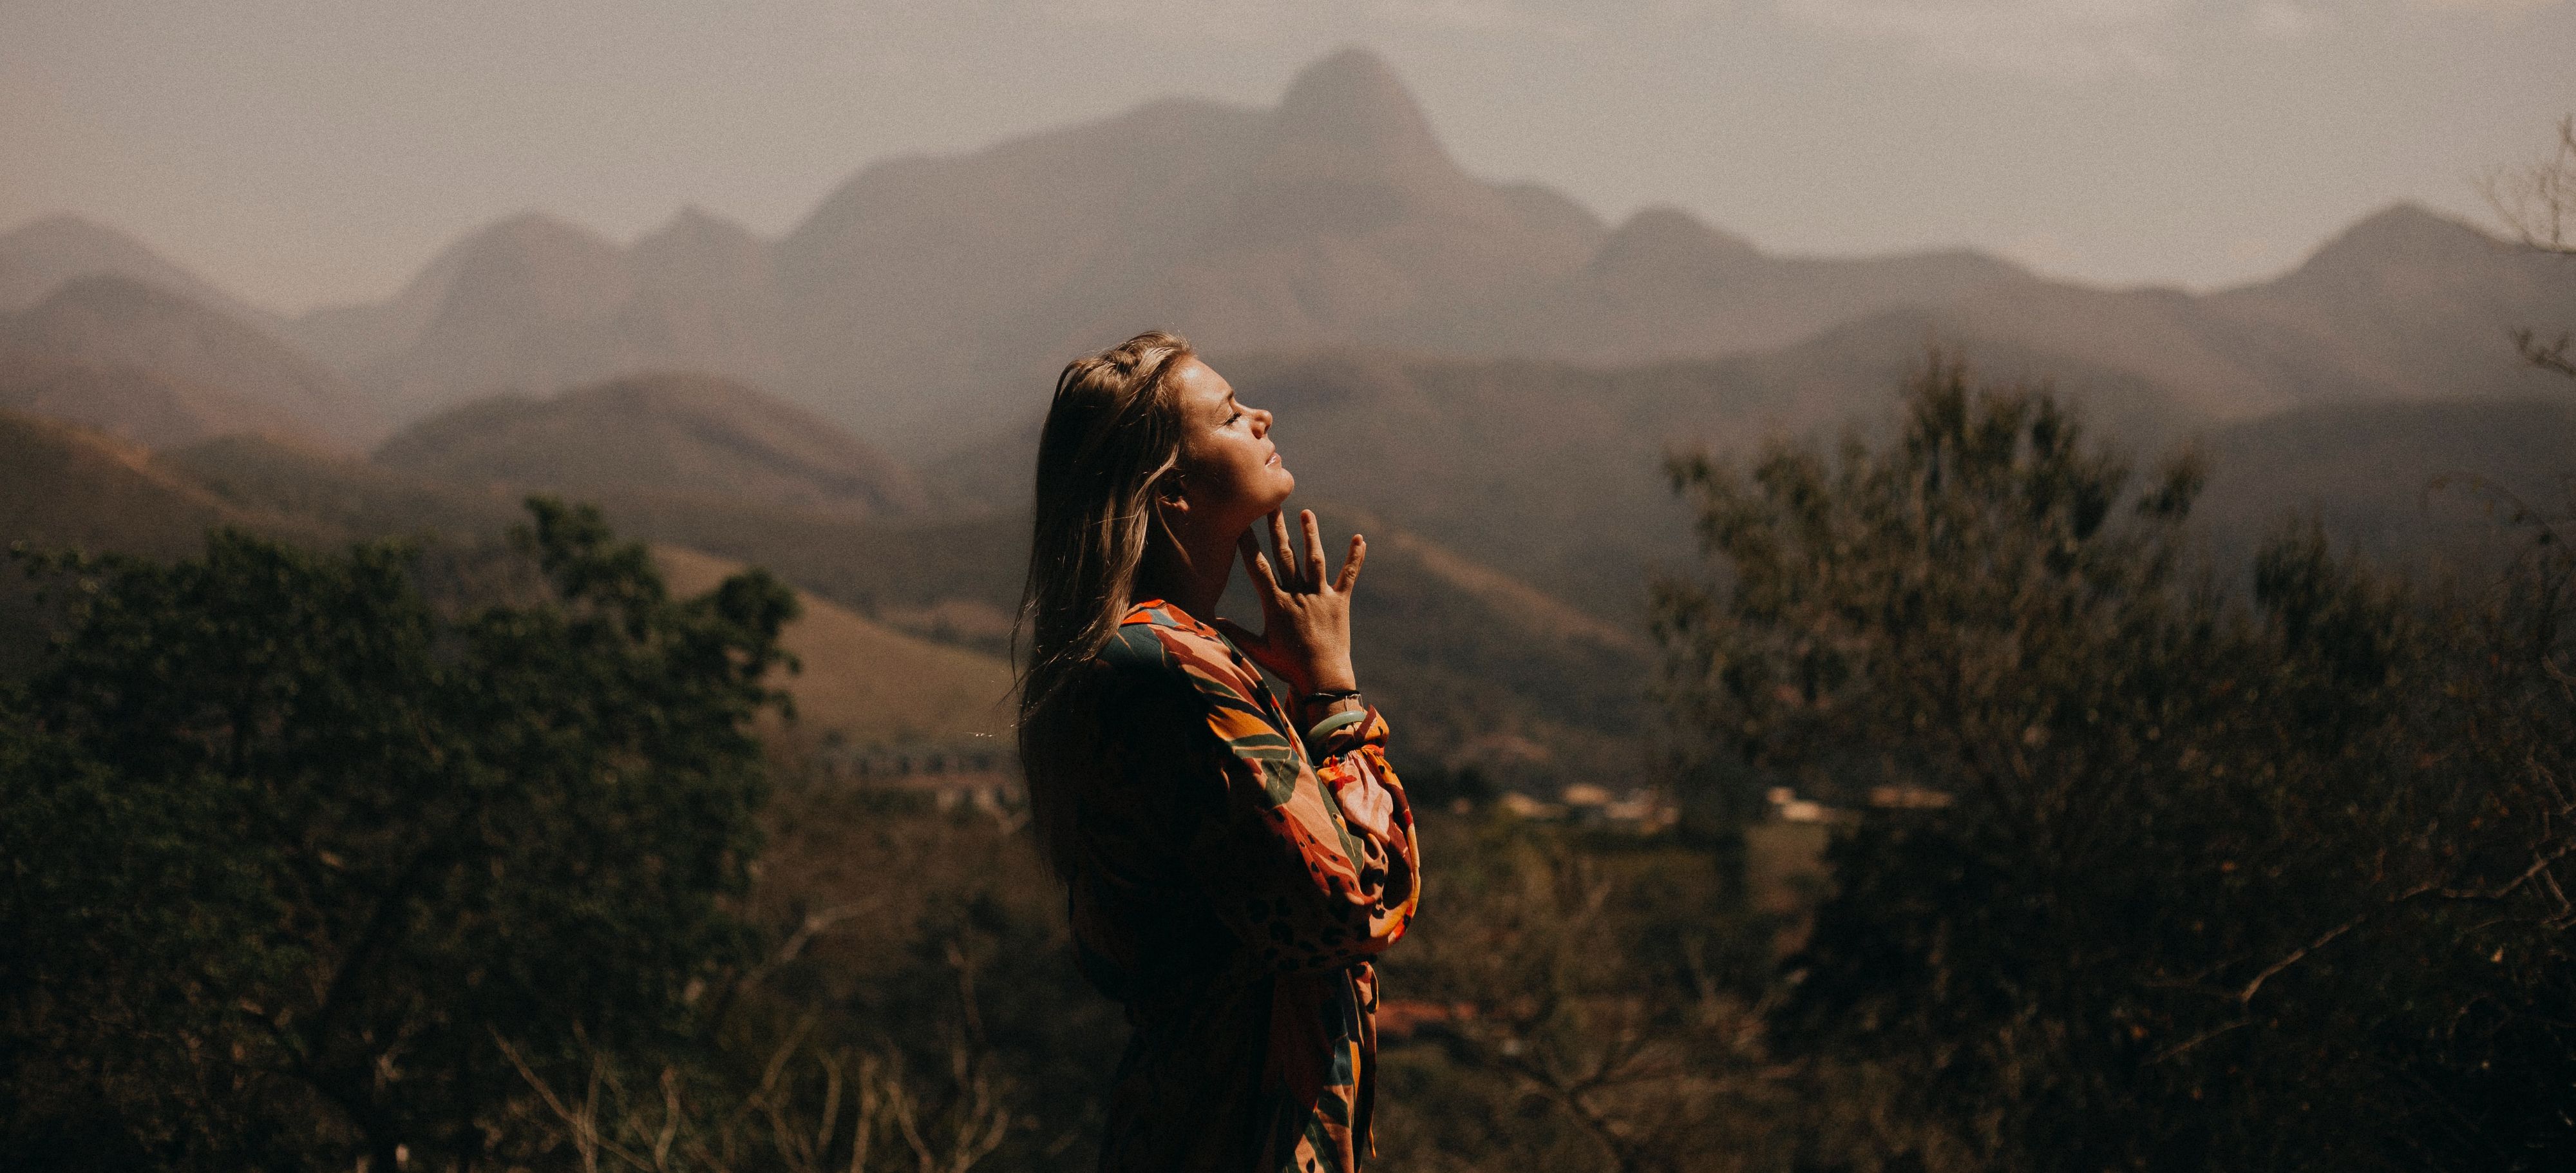 Girl praying in the mountains